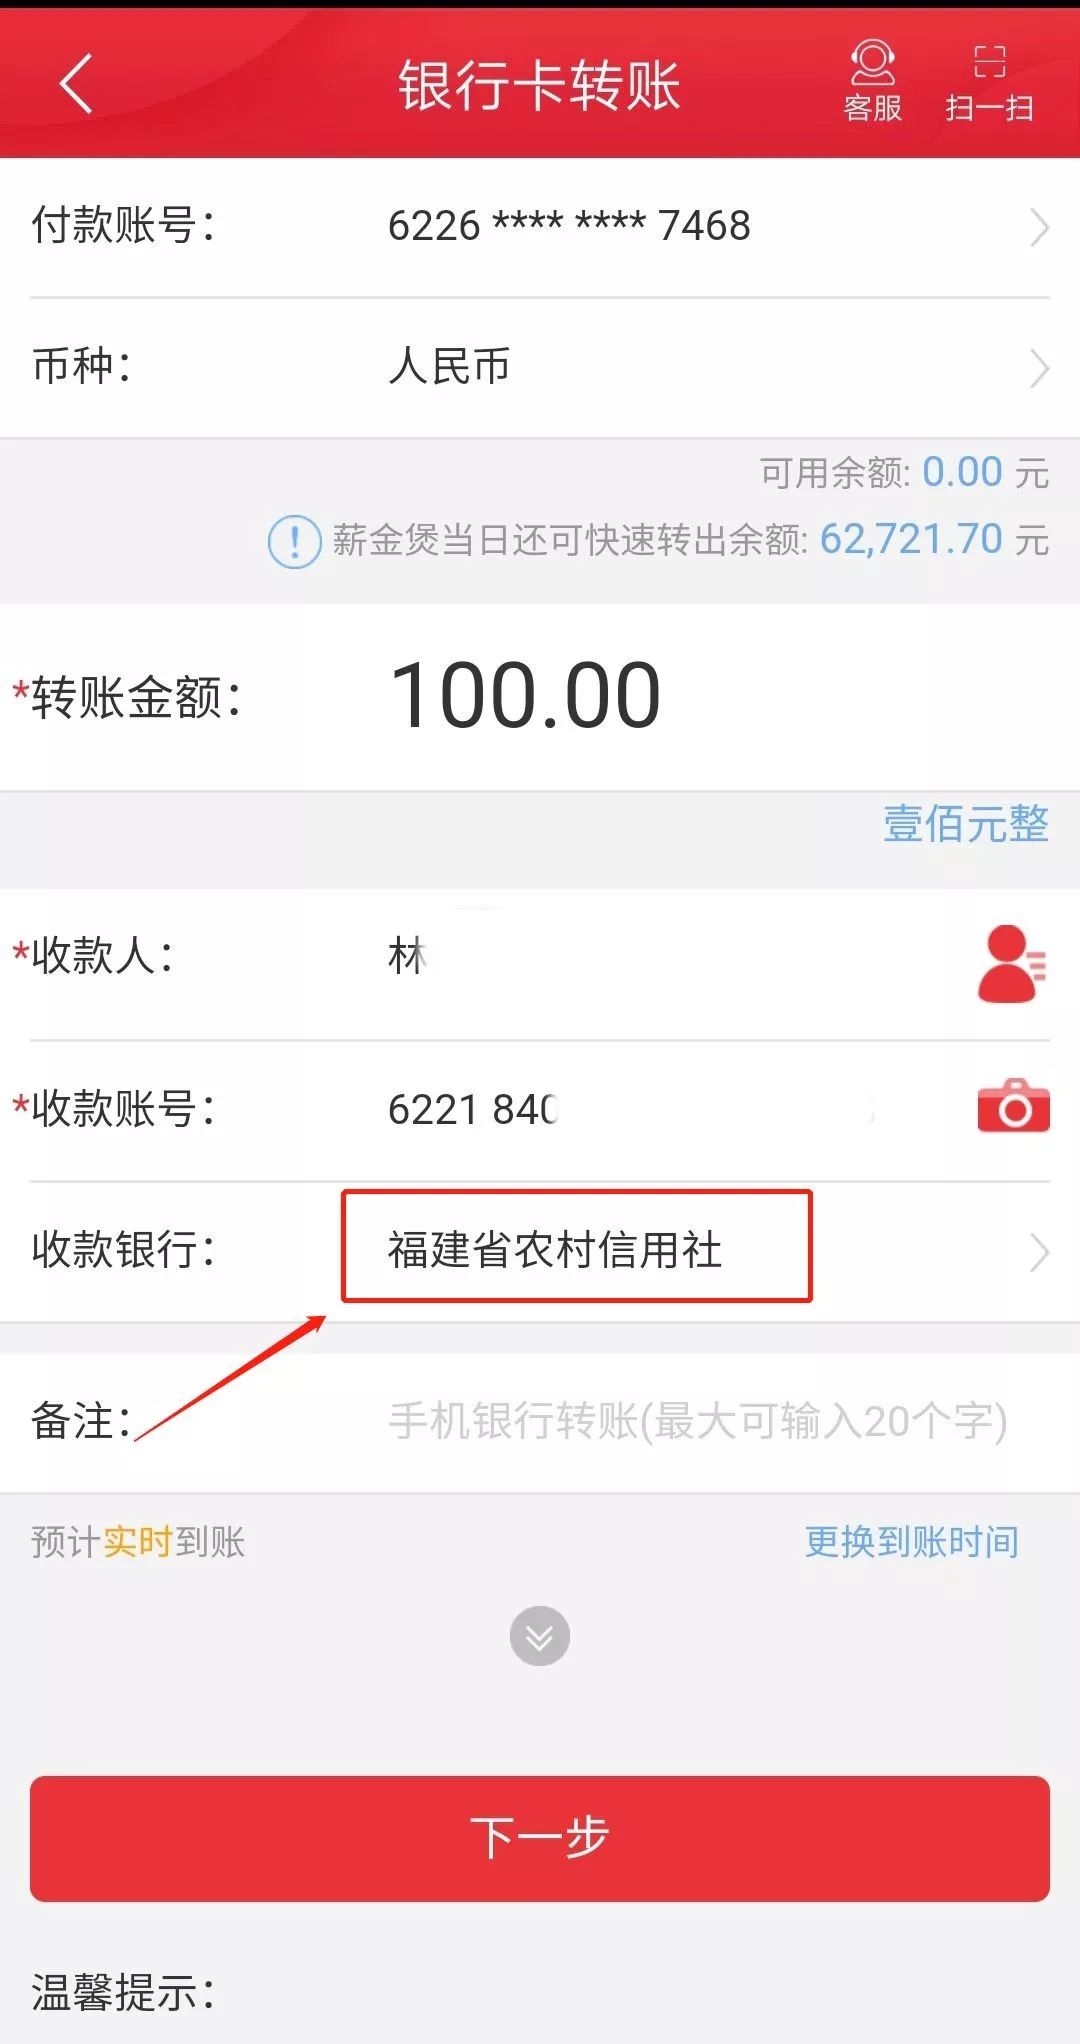 中国邮政储蓄银行1.进入转账页面,输入收款人,收款账号2.